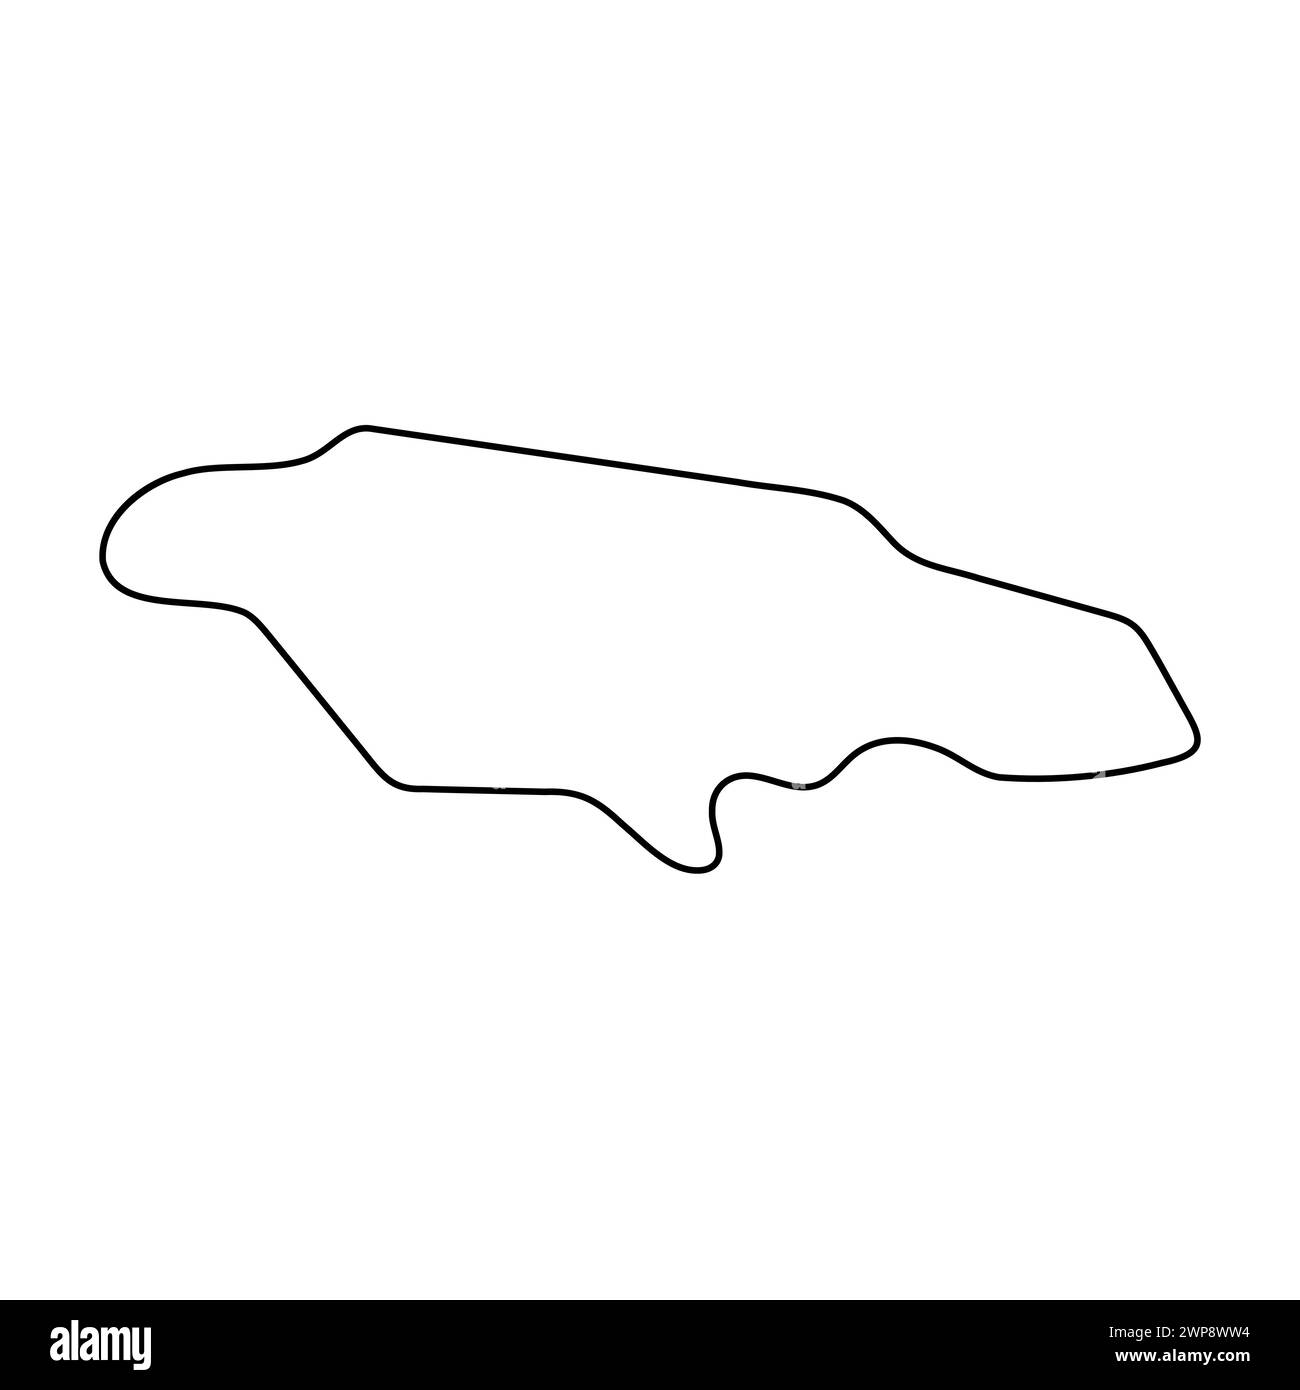 Carte simplifiée du pays de la Jamaïque. Contour noir fin. Icône vectorielle simple Illustration de Vecteur